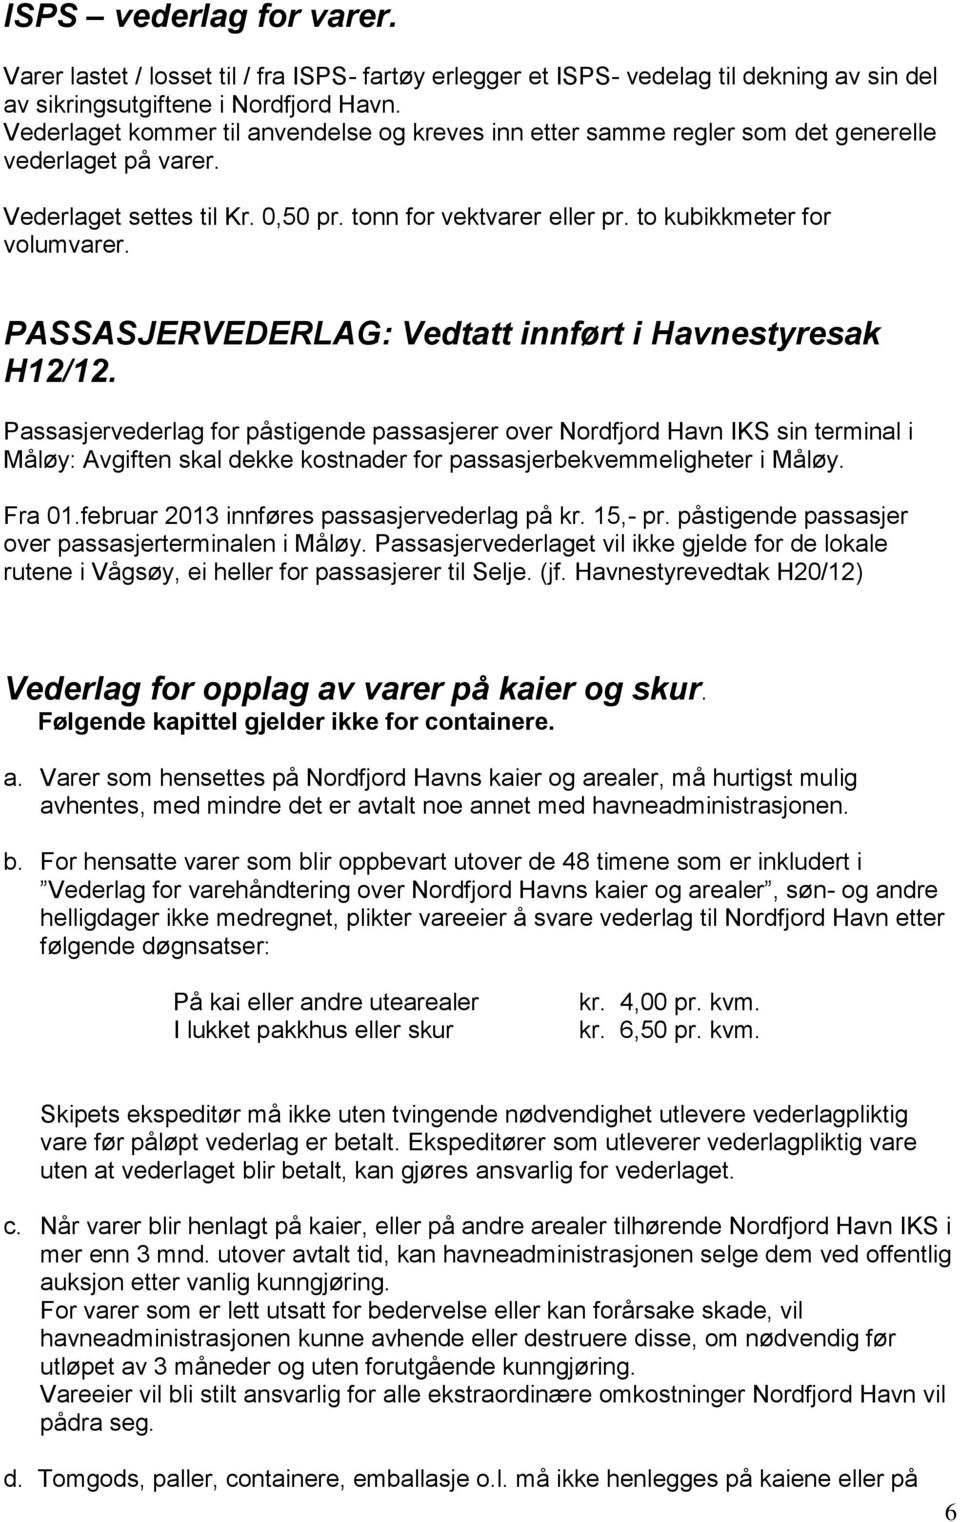 PASSASJERVEDERLAG: Vedtatt innført i Havnestyresak H12/12.